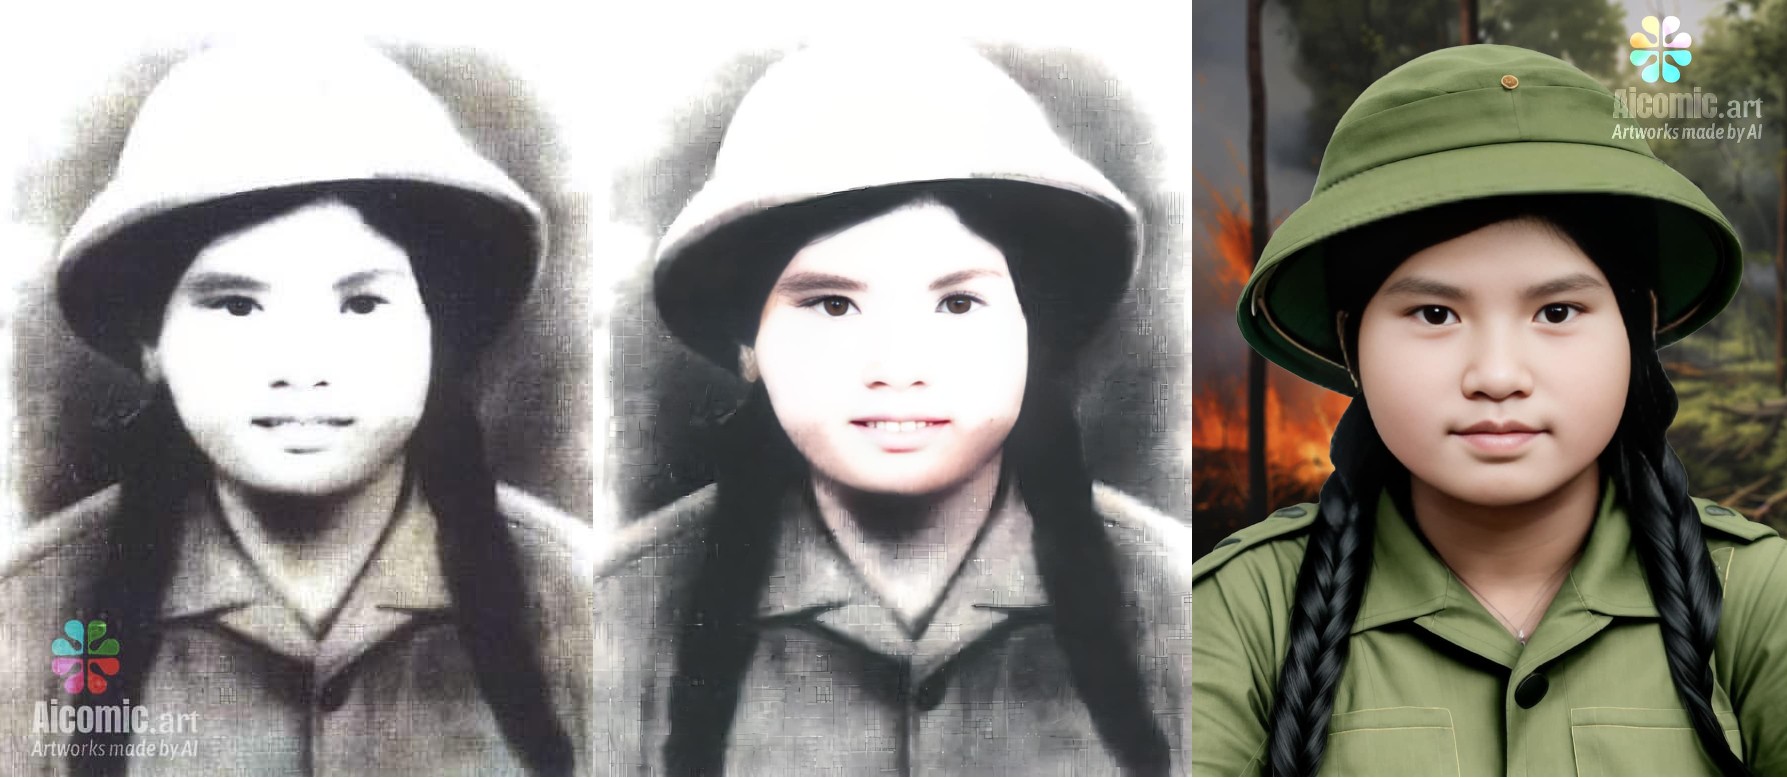 Từ trái qua phải, bức ảnh chân dung gốc của liệt sĩ Võ Thị Hà được AI học tập và phục dựng 